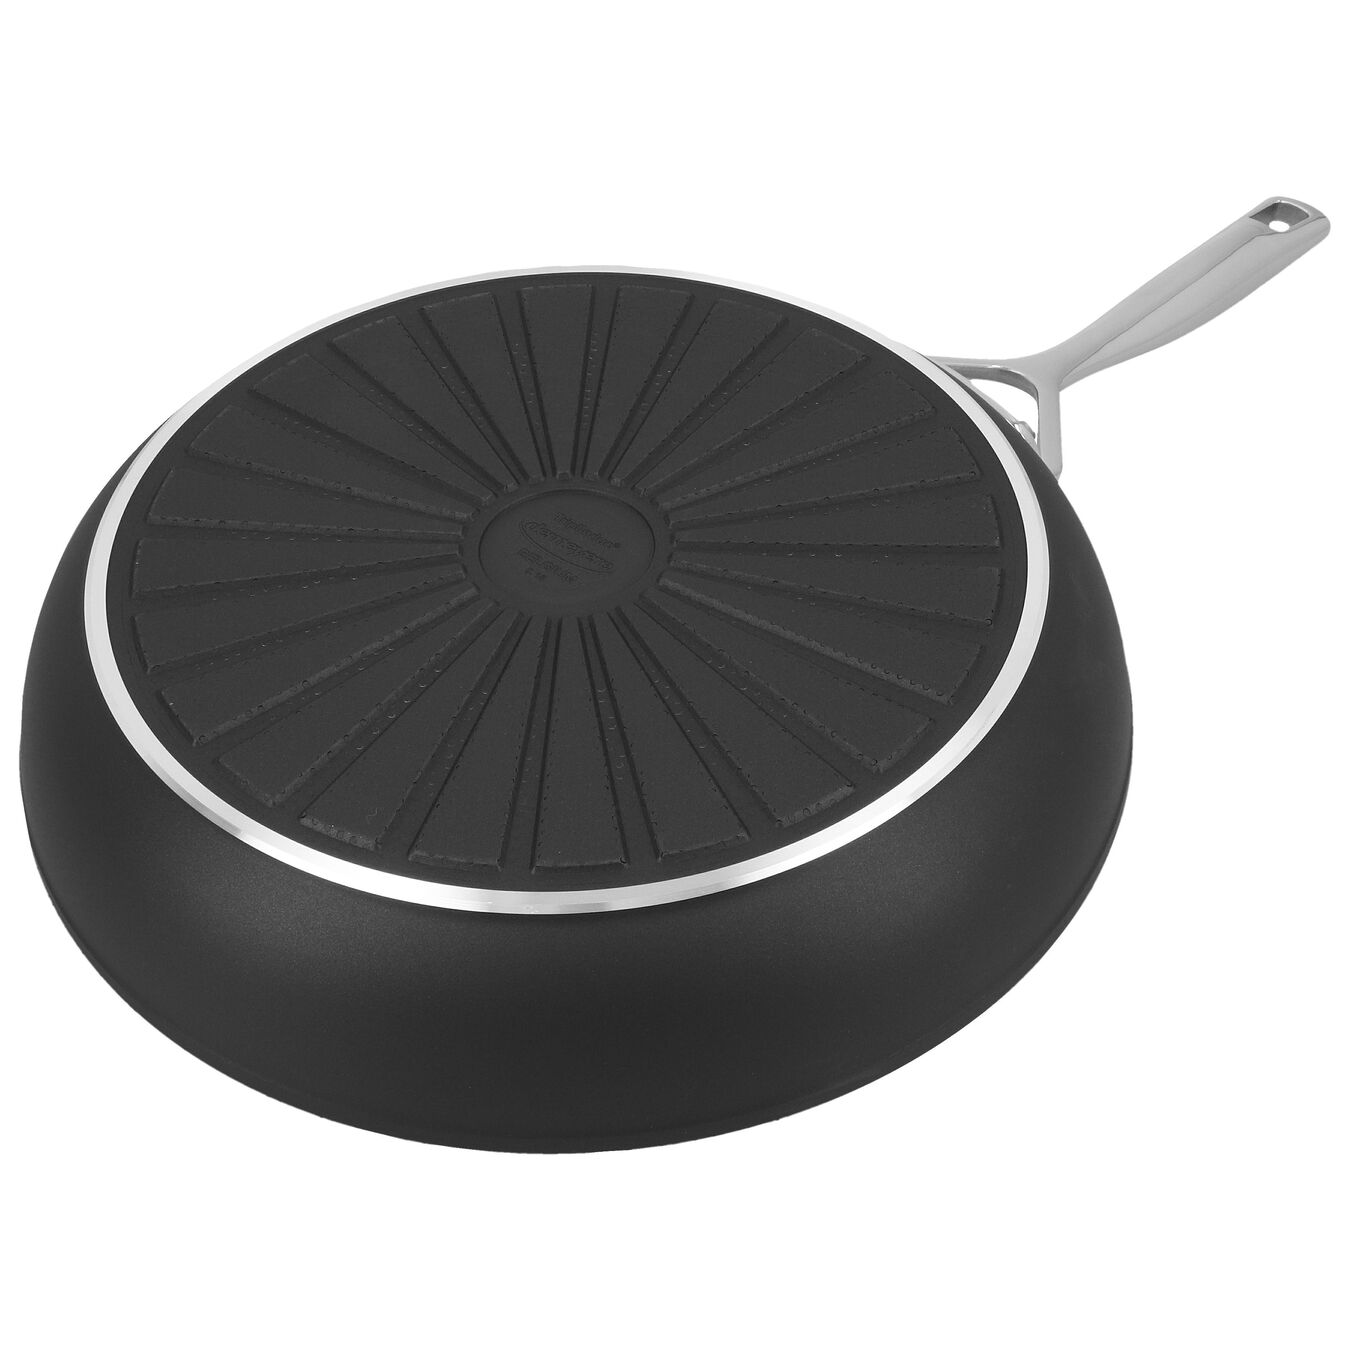 28 cm / 11 inch aluminium Frying pan,,large 2